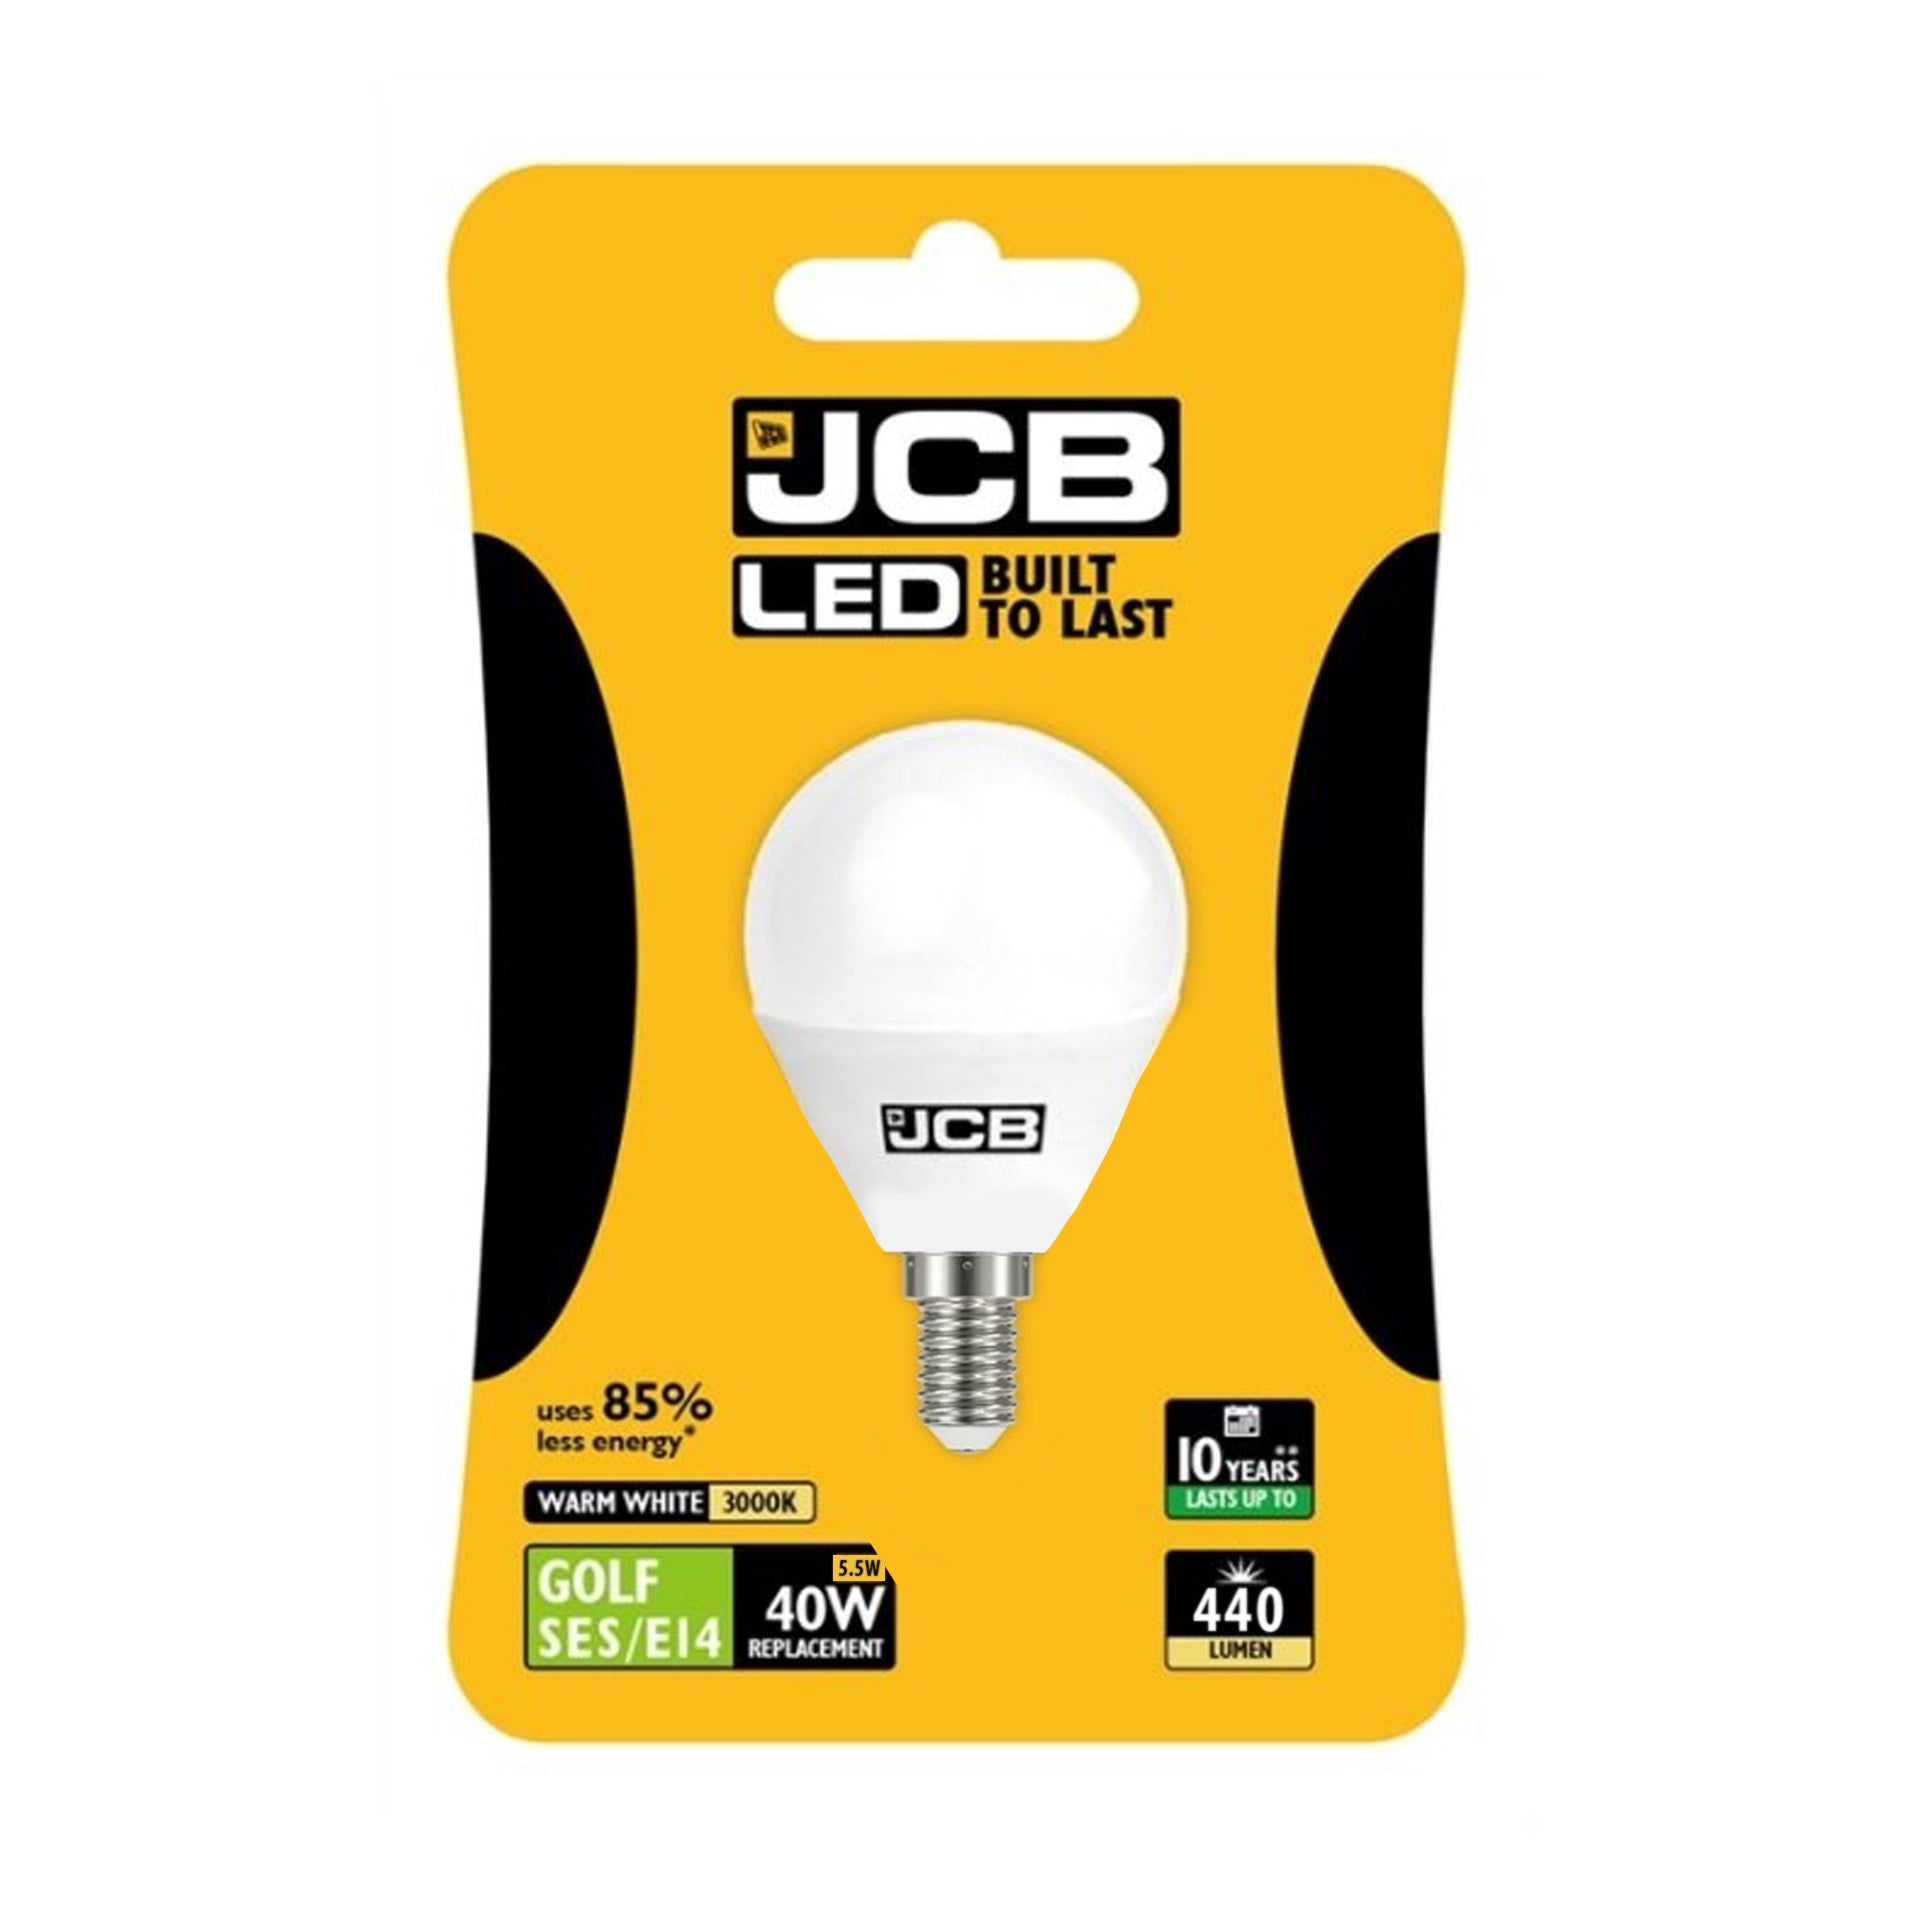 JCB Golf SES/E14 5.5w Light Bulb - Warm White